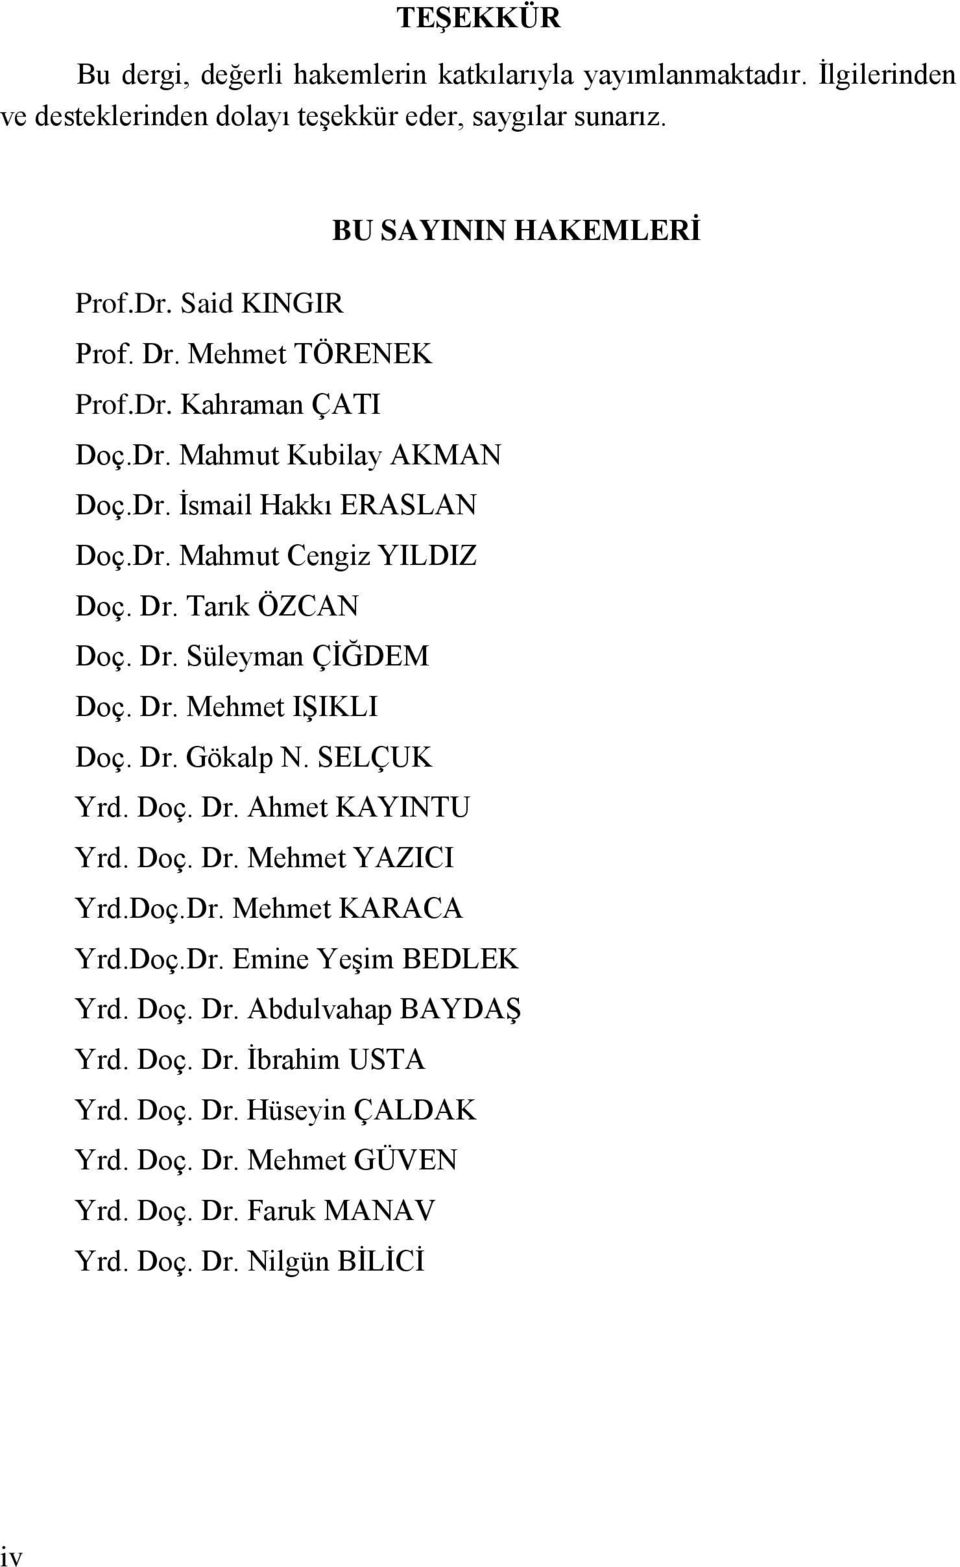 Dr. Süleyman ÇĠĞDEM Doç. Dr. Mehmet IġIKLI Doç. Dr. Gökalp N. SELÇUK Yrd. Doç. Dr. Ahmet KAYINTU Yrd. Doç. Dr. Mehmet YAZICI Yrd.Doç.Dr. Mehmet KARACA Yrd.Doç.Dr. Emine YeĢim BEDLEK Yrd.